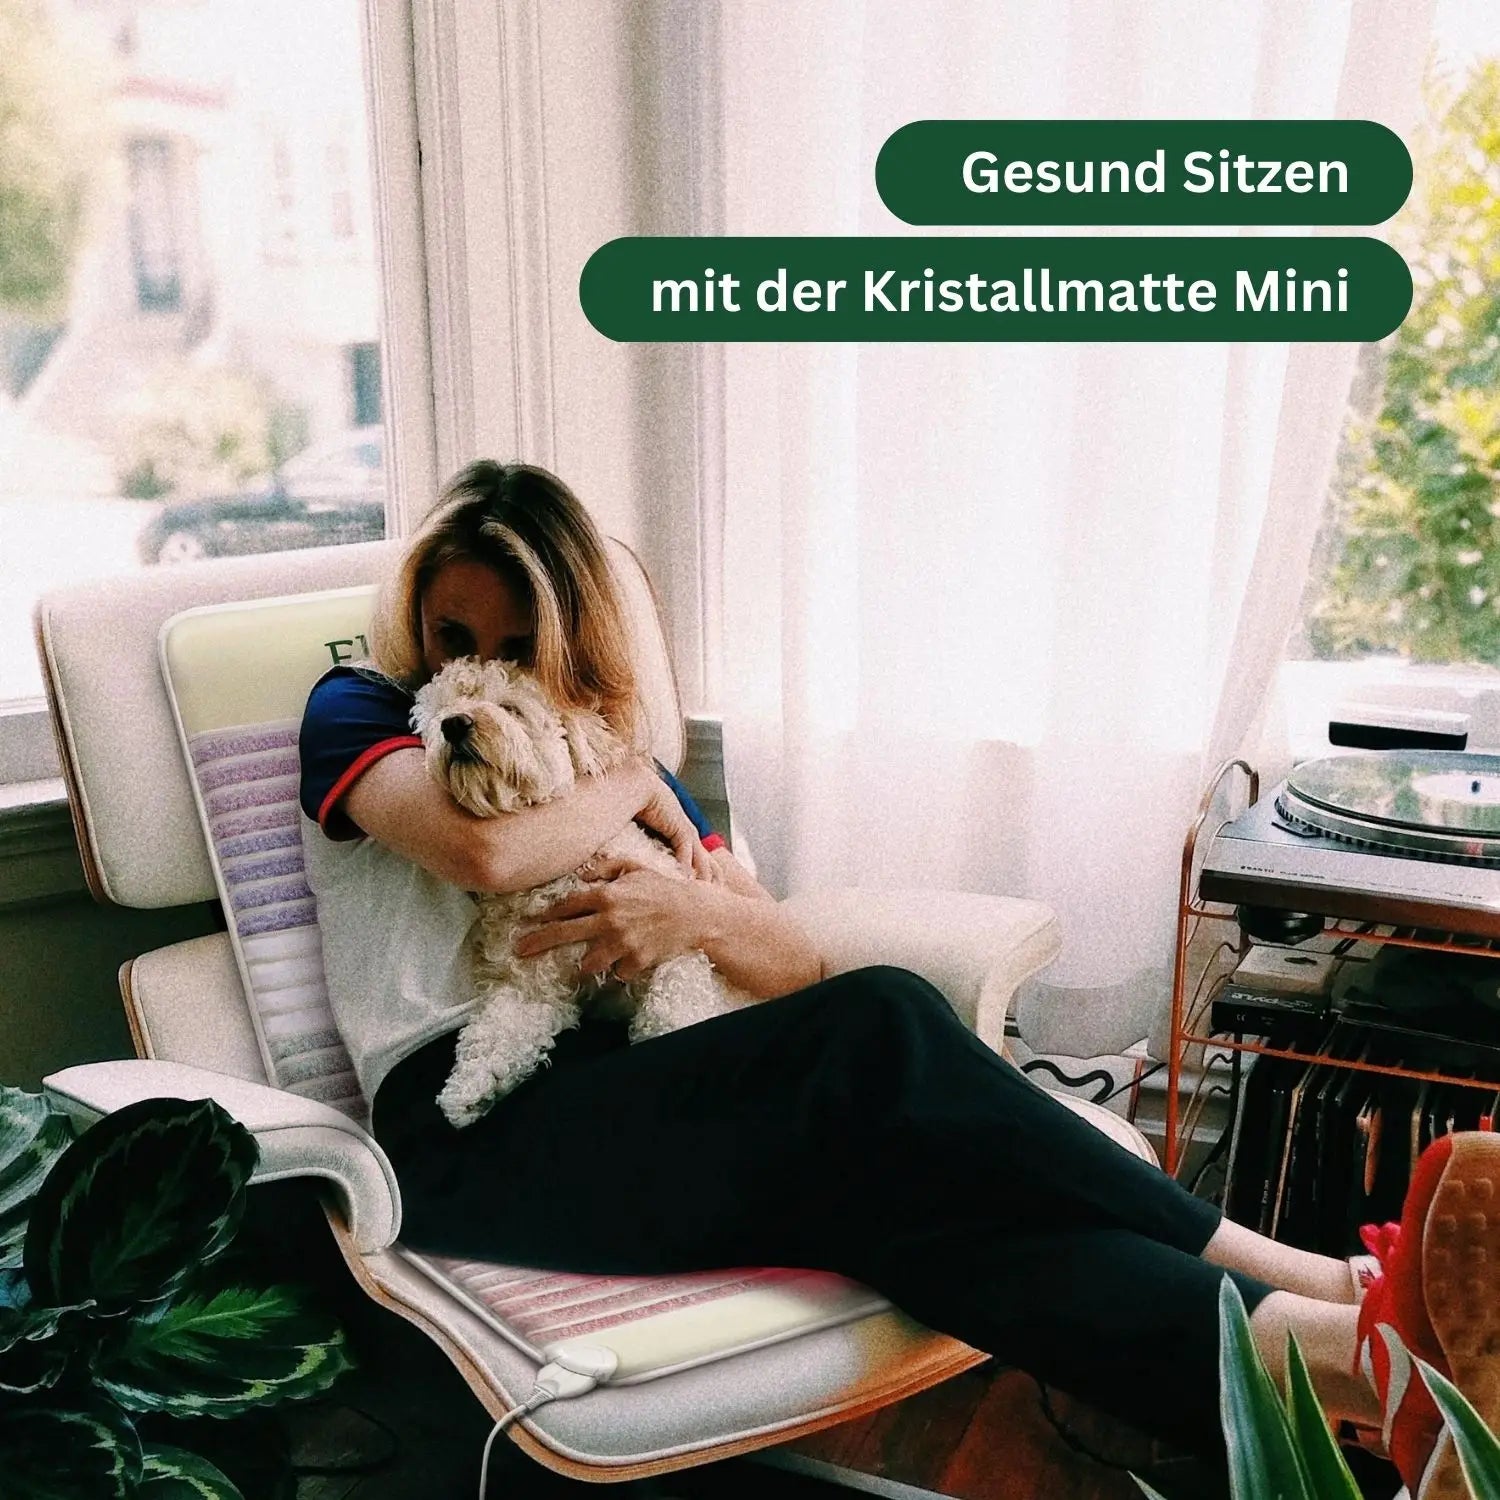 Junge Frau und Hund auf Sessel mit Elvari Kristallmatte Mini